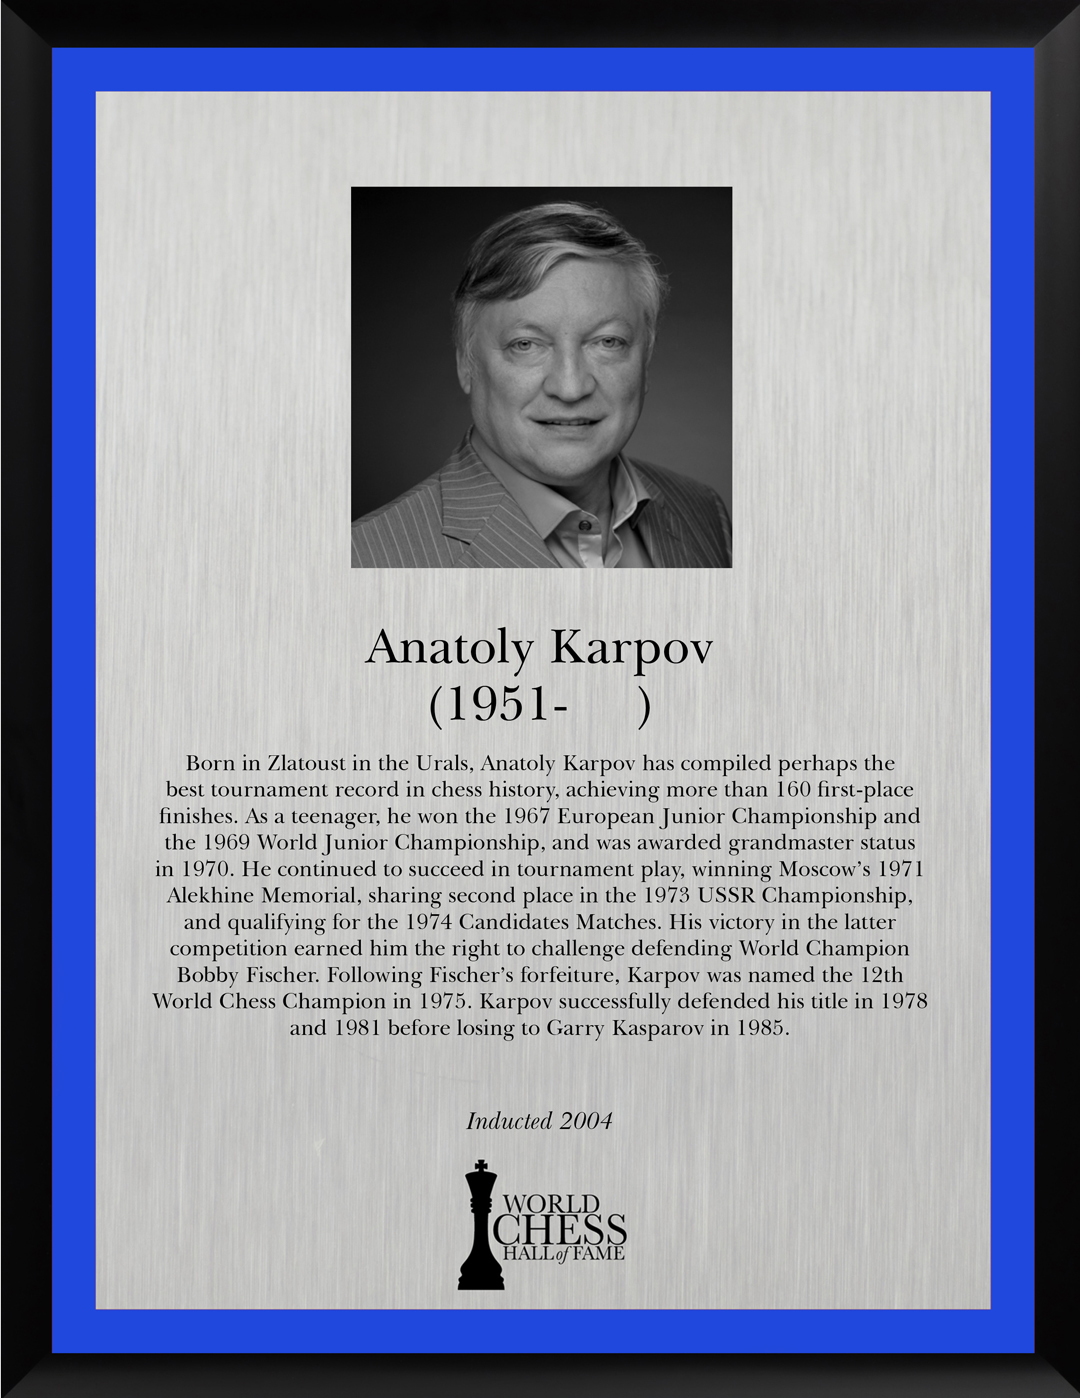 Anatoly Karpov's Best Games by Anatoly Karpov (2003-06-30